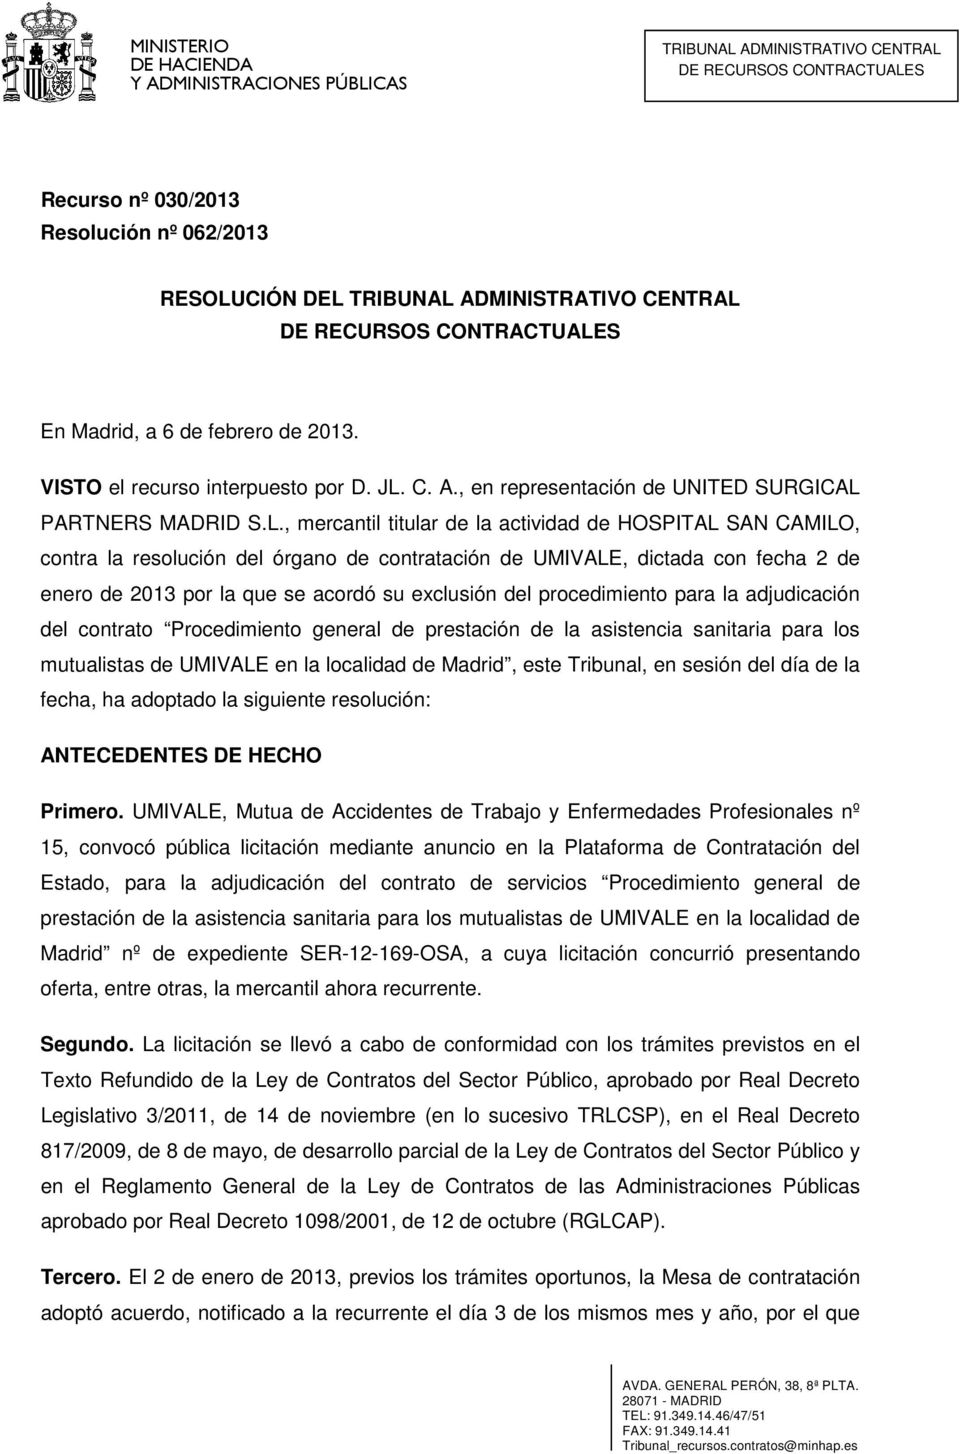 procedimiento para la adjudicación del contrato Procedimiento general de prestación de la asistencia sanitaria para los mutualistas de UMIVALE en la localidad de Madrid, este Tribunal, en sesión del